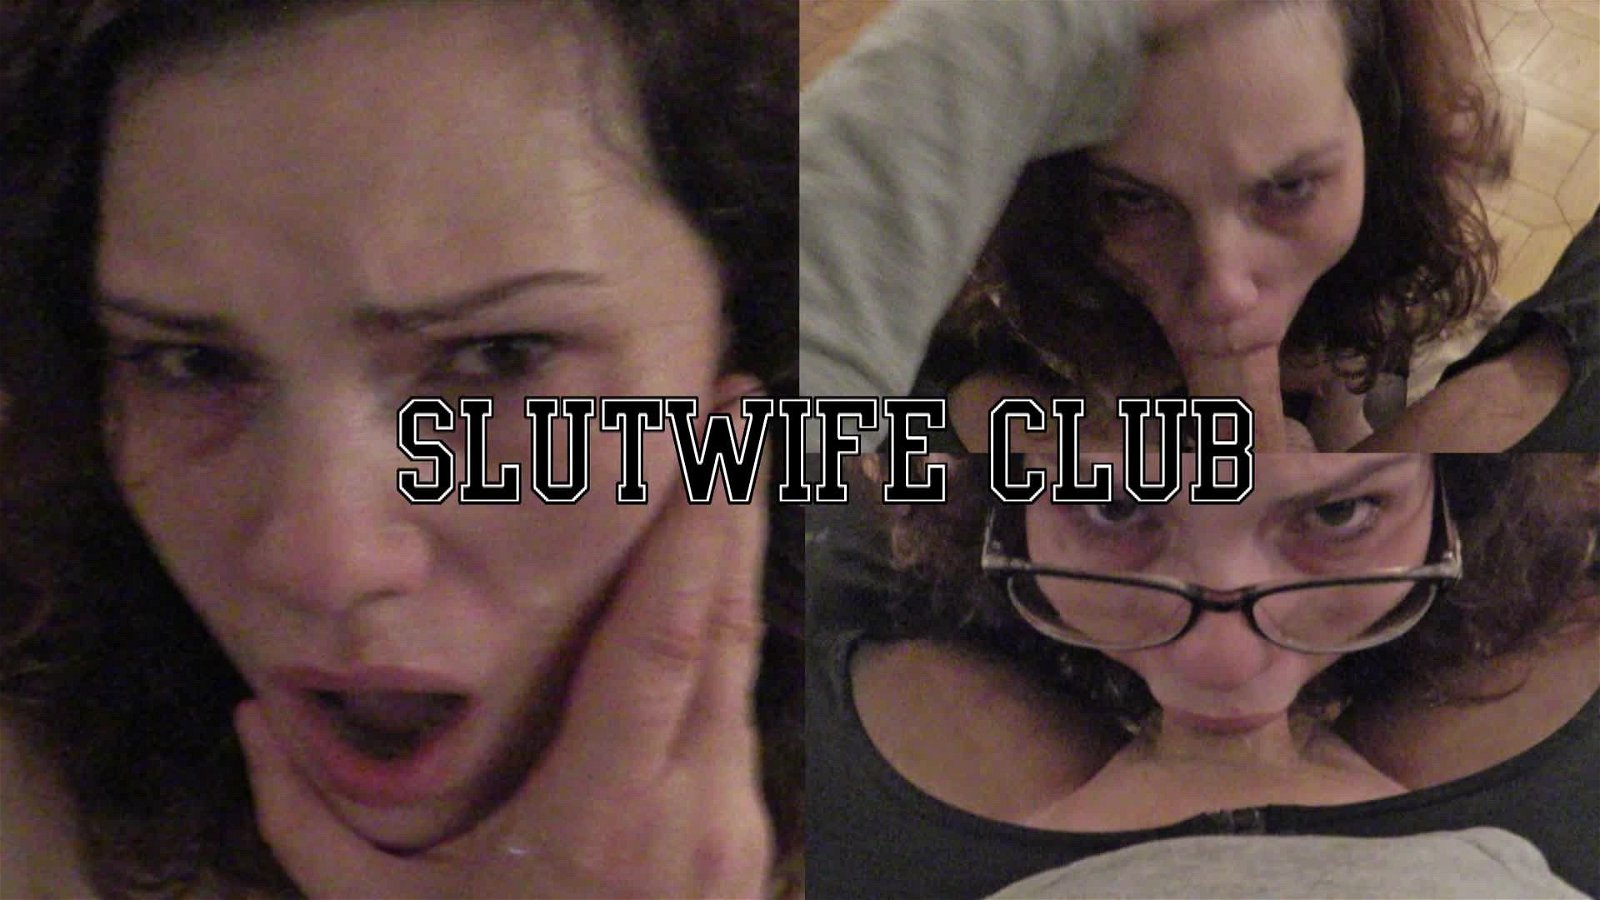 Video post by SLUTWIFE CLUB